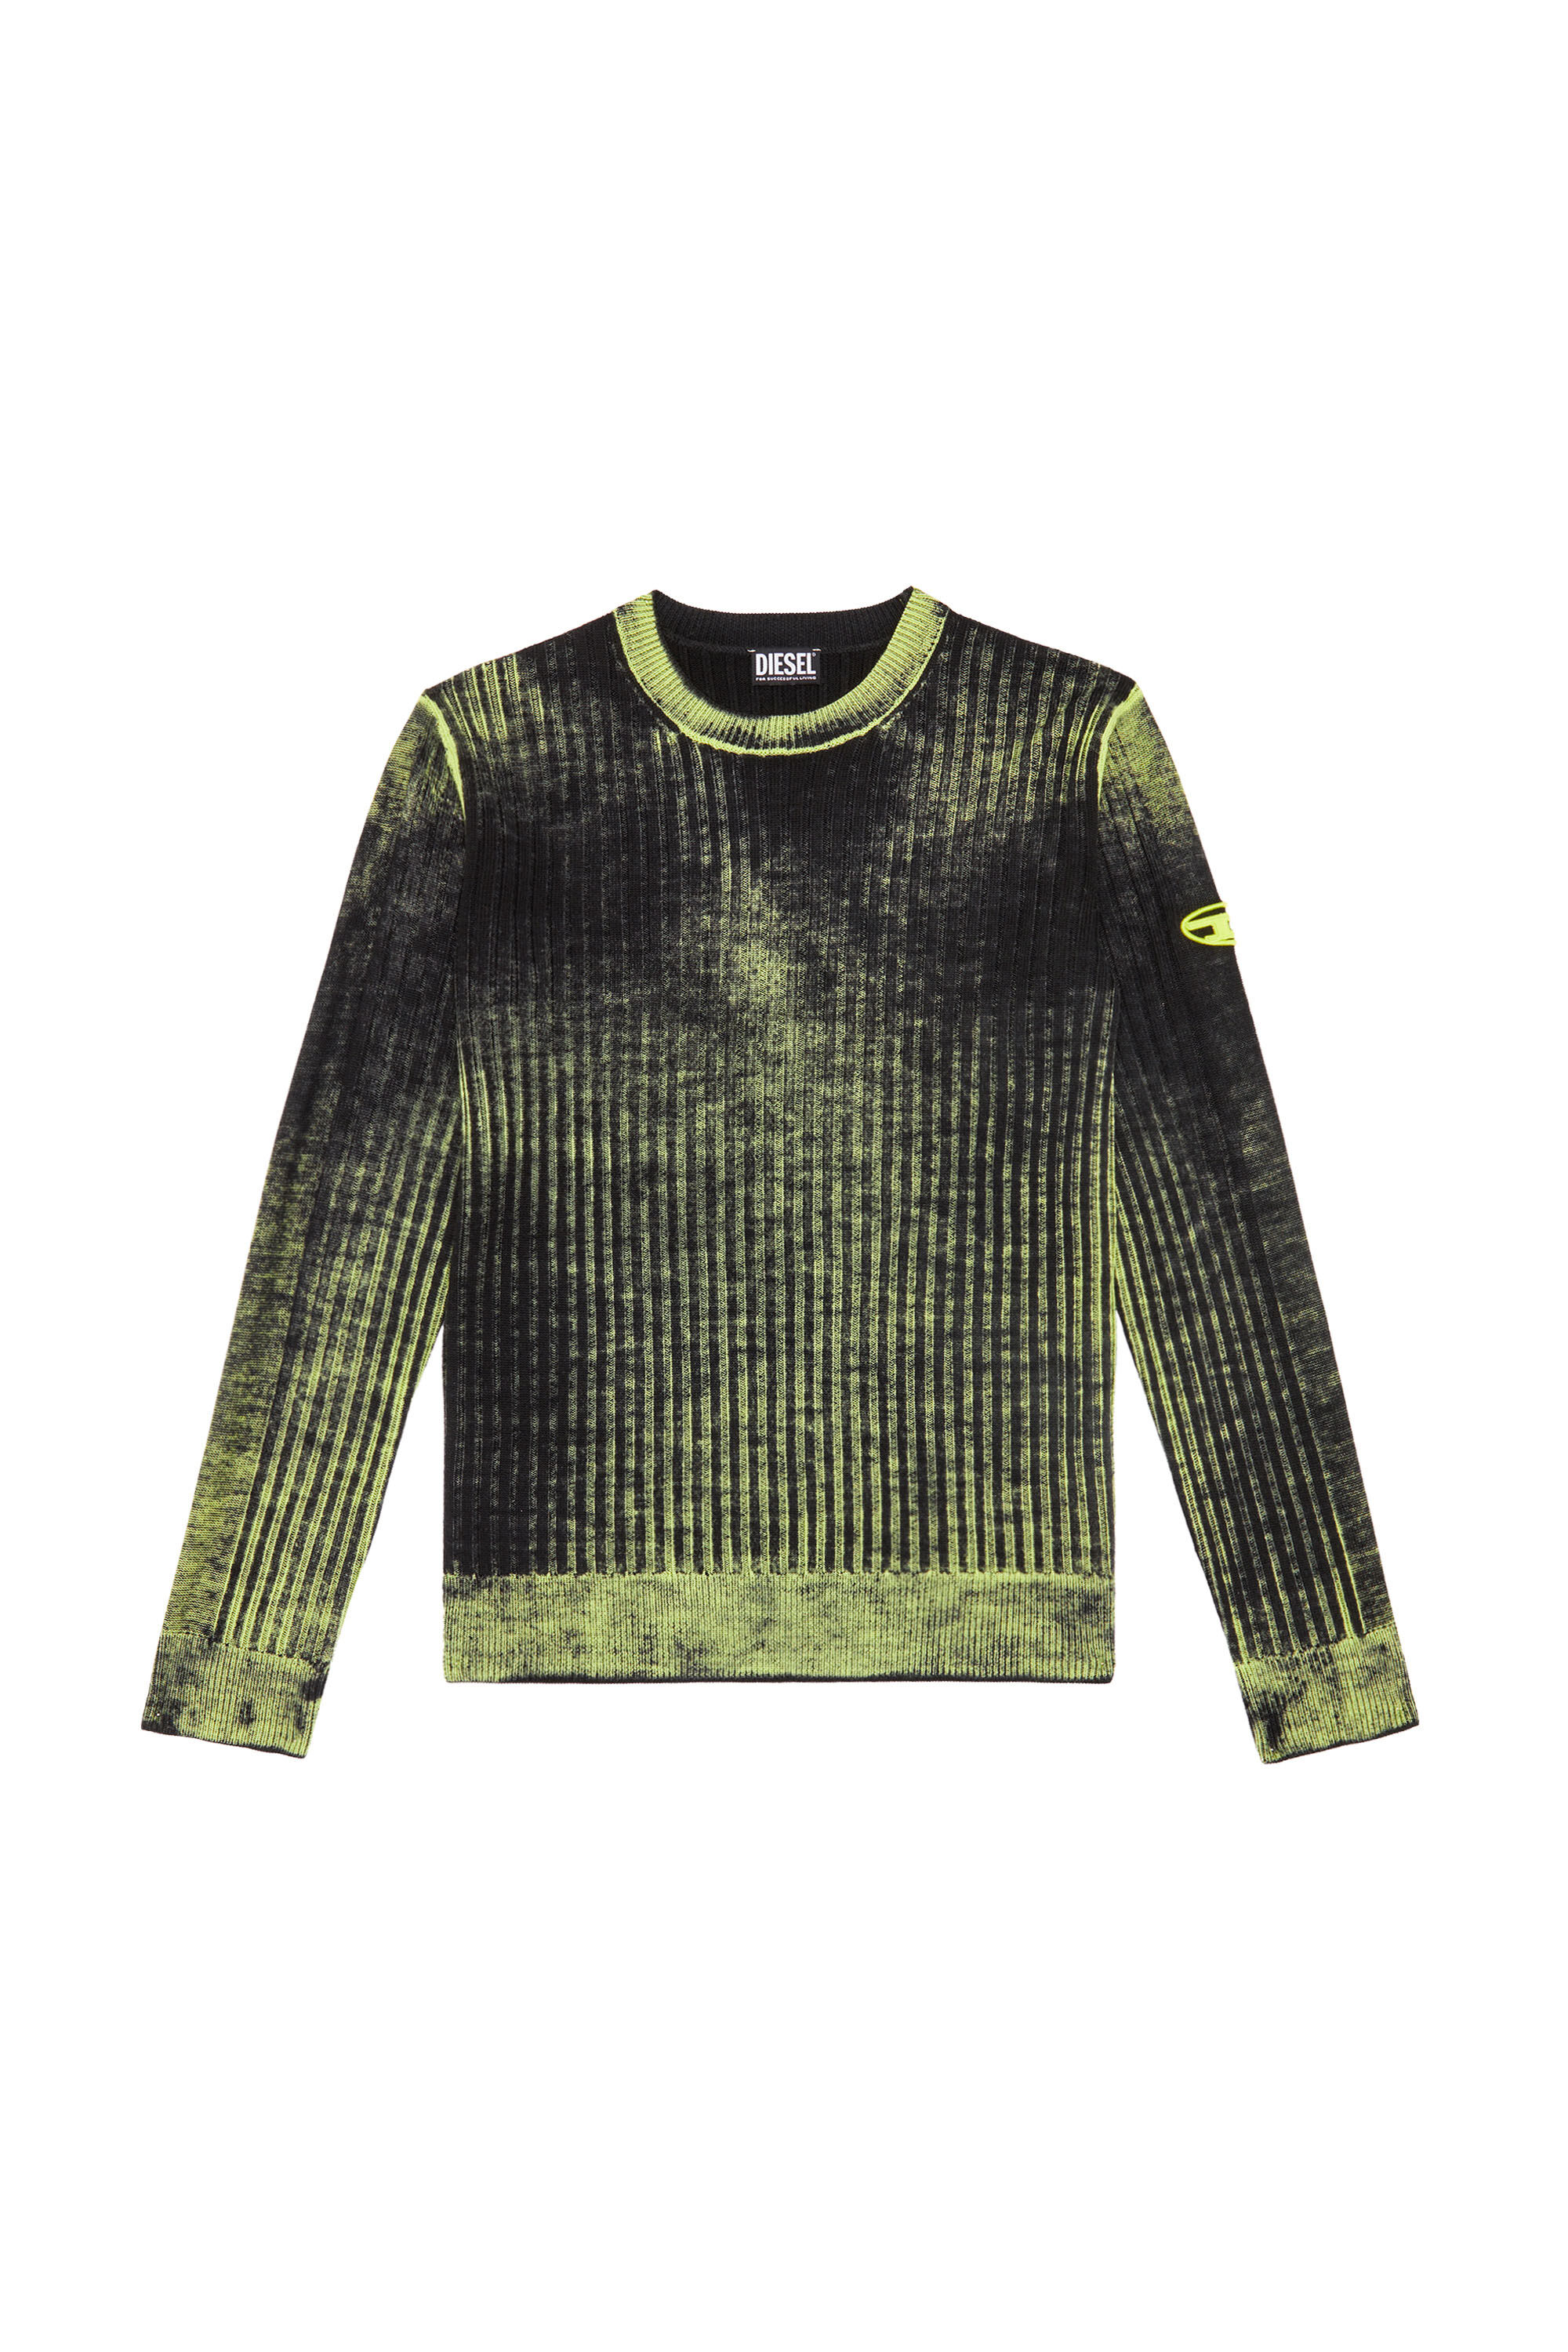 Diesel - K-ANDELERO, Man Printed wool jumper in Green - Image 2